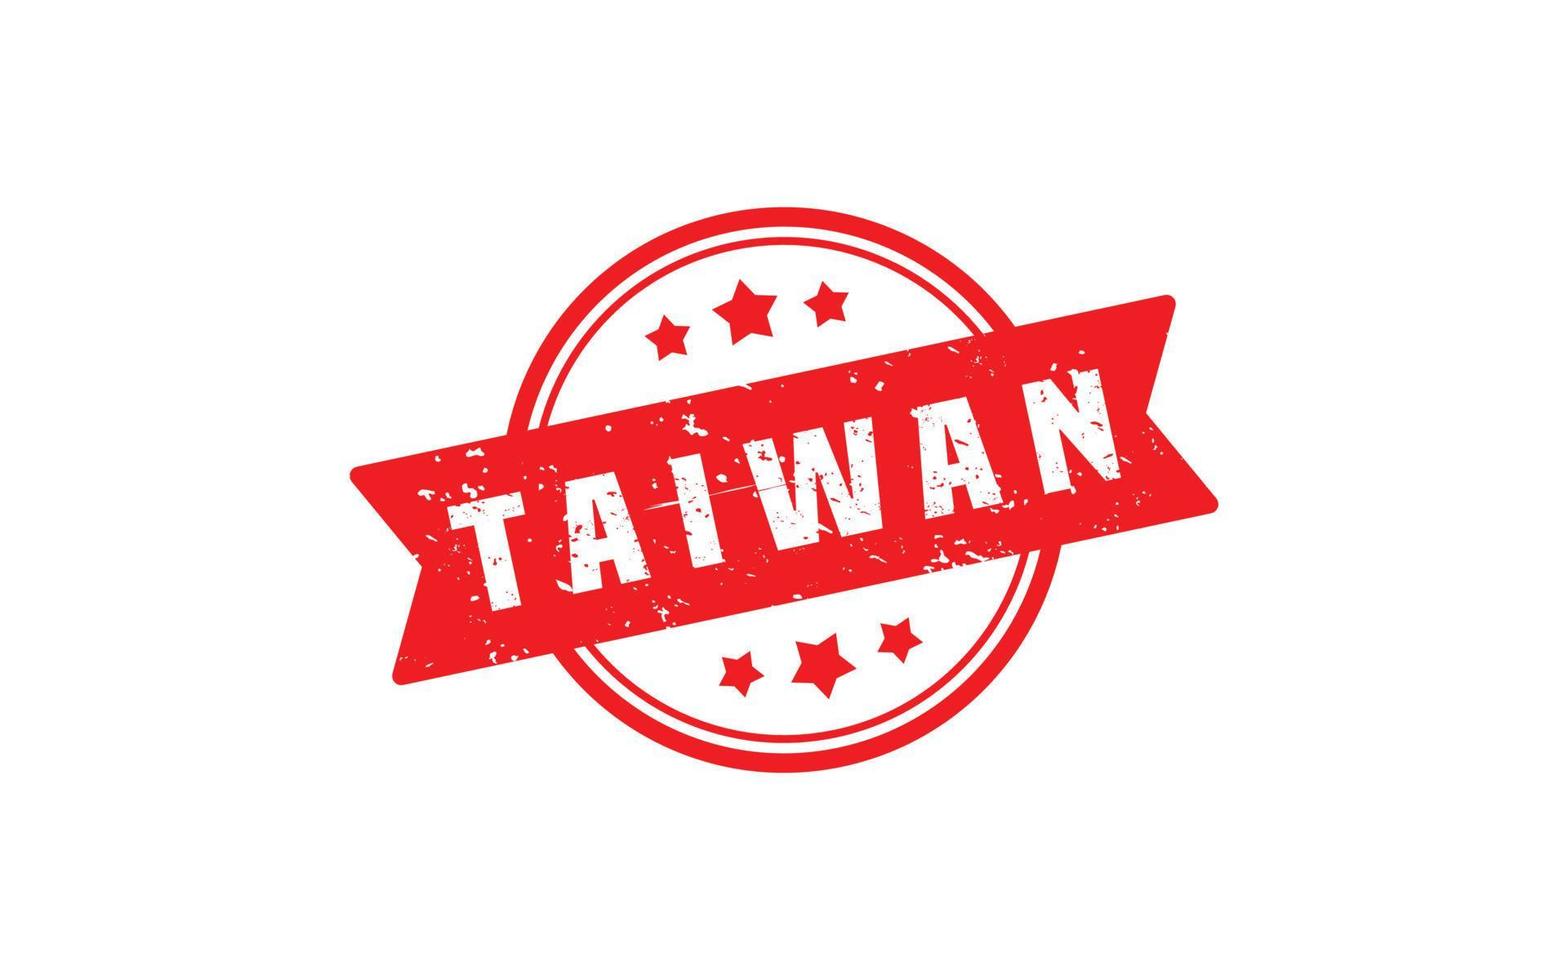 Taiwan Briefmarke Gummi mit Grunge Stil auf Weiß Hintergrund vektor